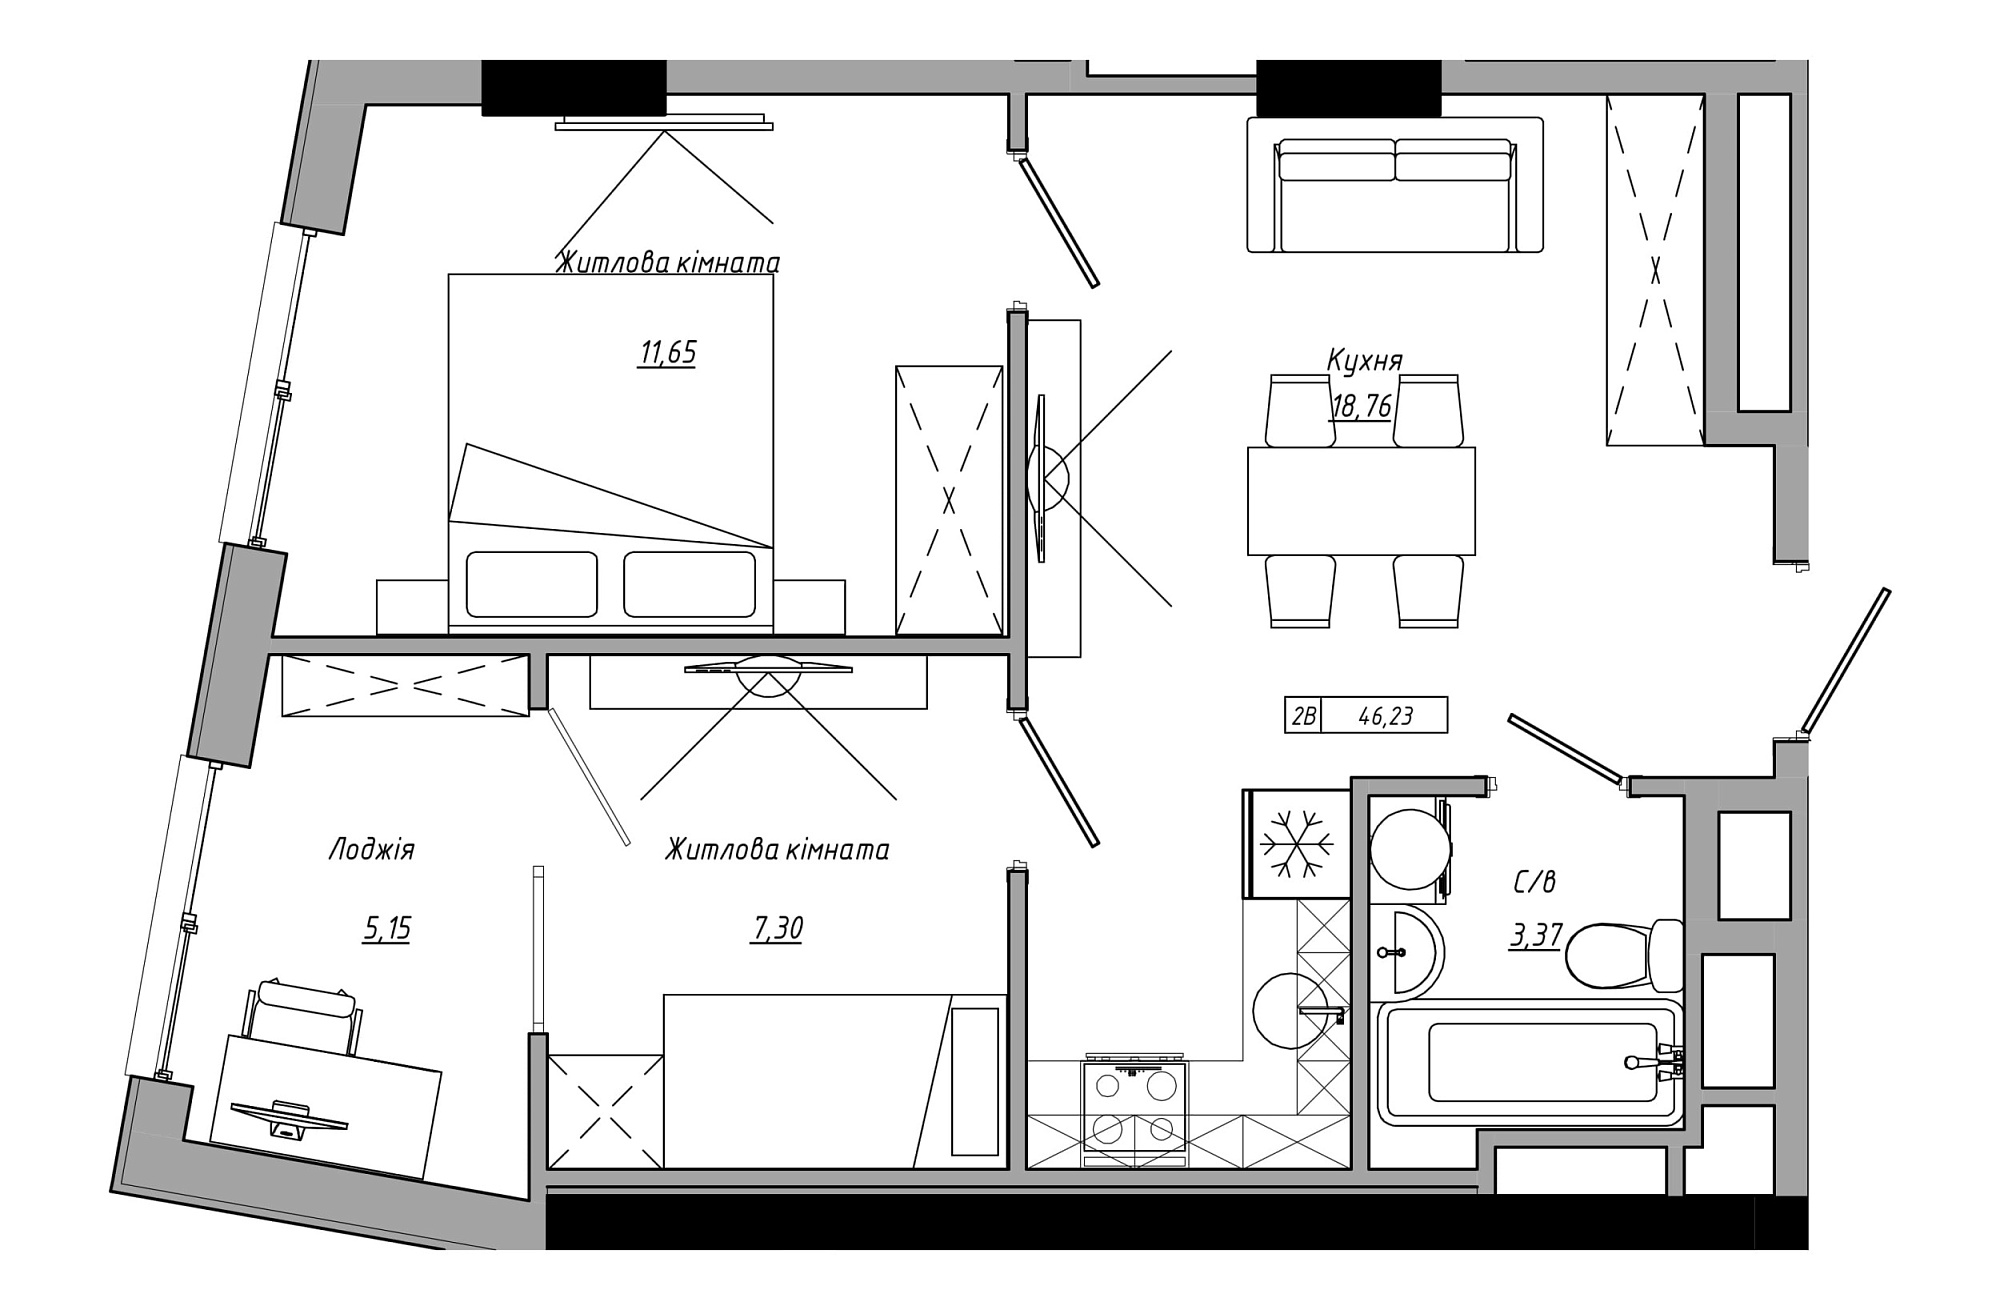 Планування 2-к квартира площею 46.23м2, AB-21-06/00008.